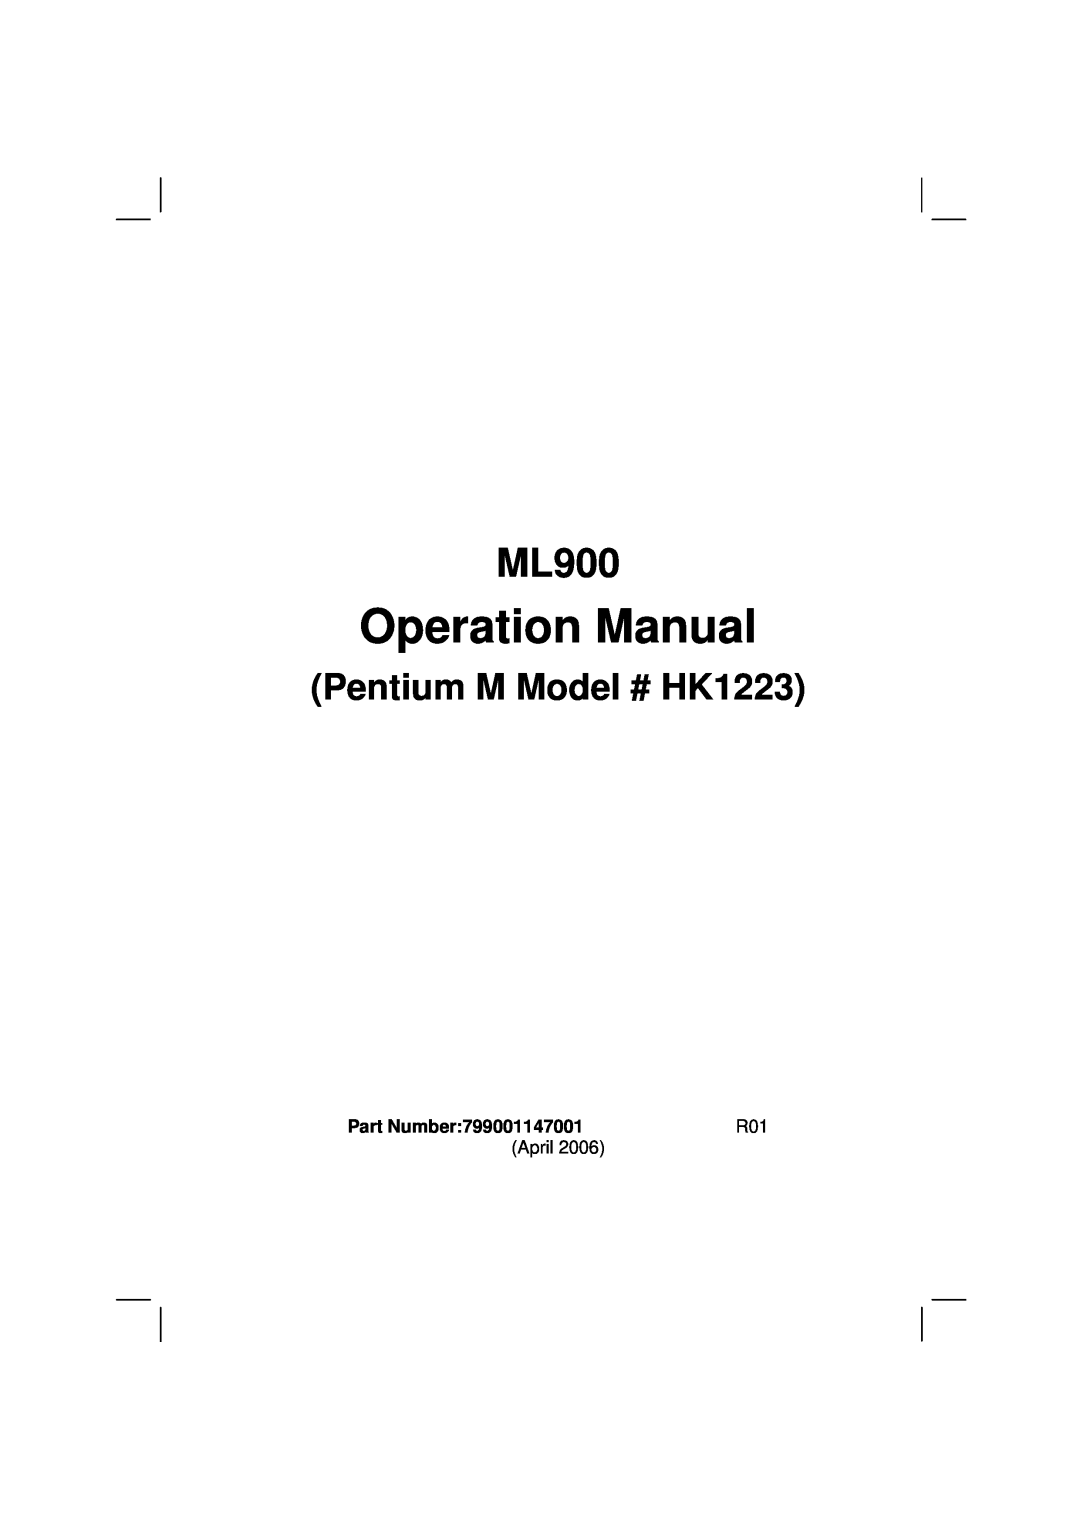 Casio owner manual Operation Manual, ML900, Pentium M Model # HK1223, Part Number799001147001 7990 0114 3001 R01 